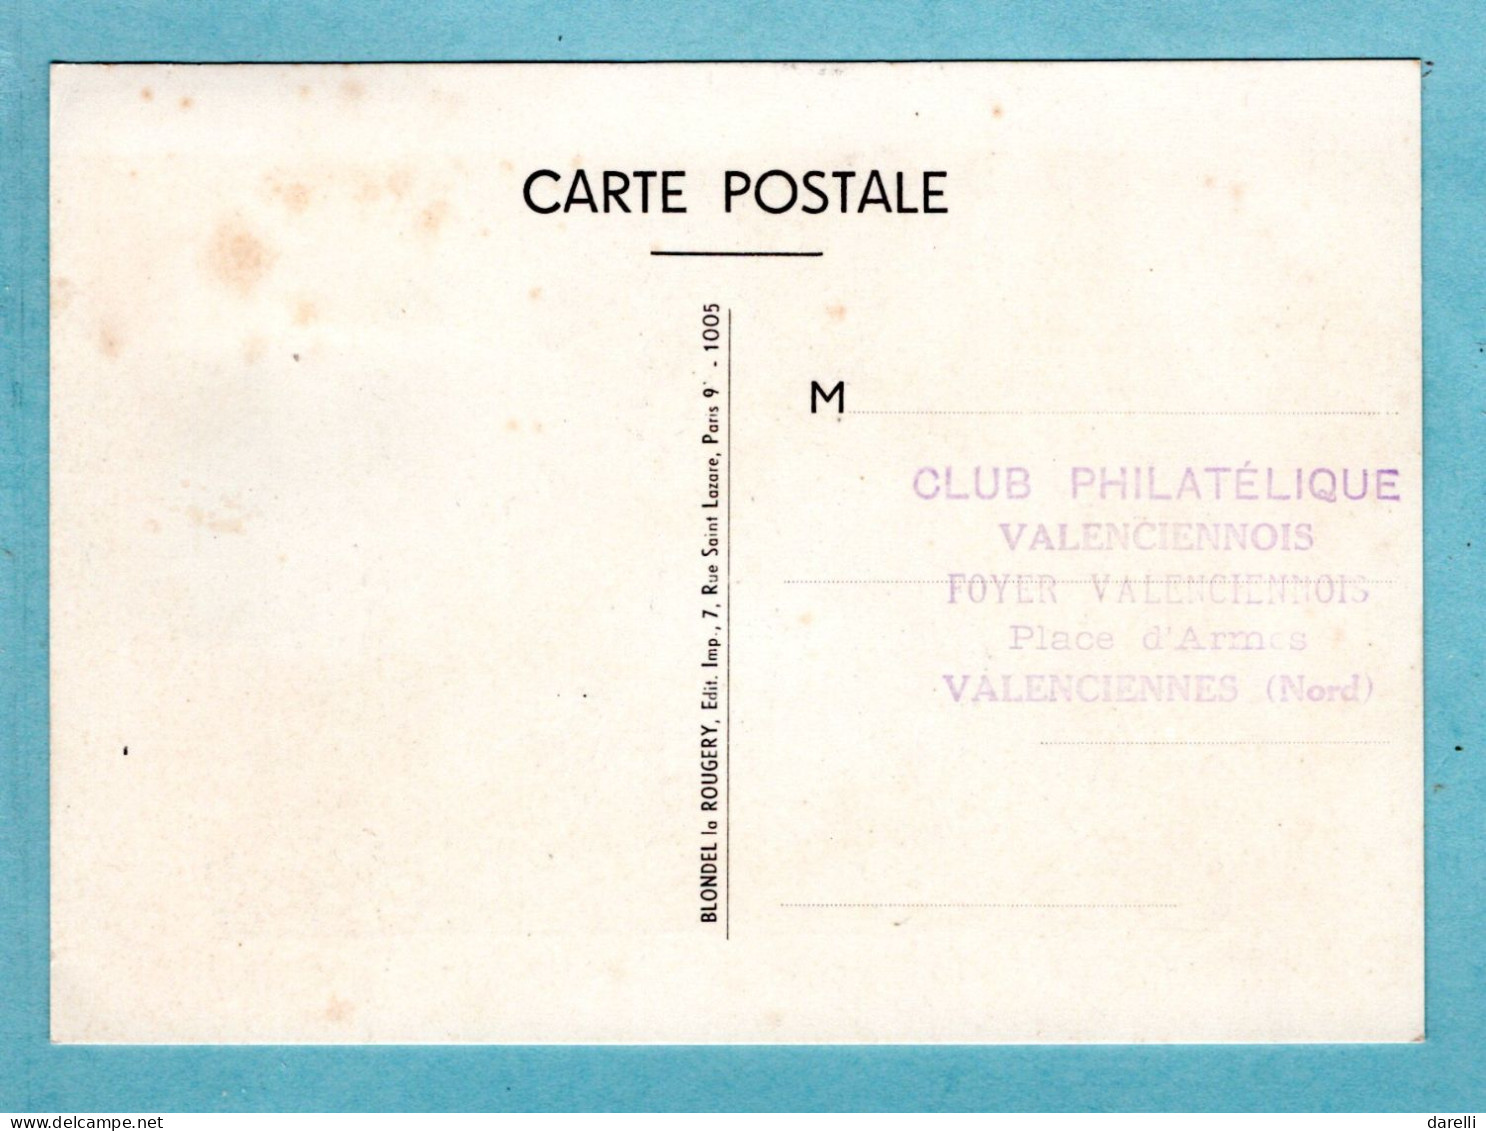 Carte Maximum 1955 - Journée Du Timbre 1955 - 85ème Anniversaire De La Poste Aérienne - YT 1018 - Valenciennes - 1950-1959